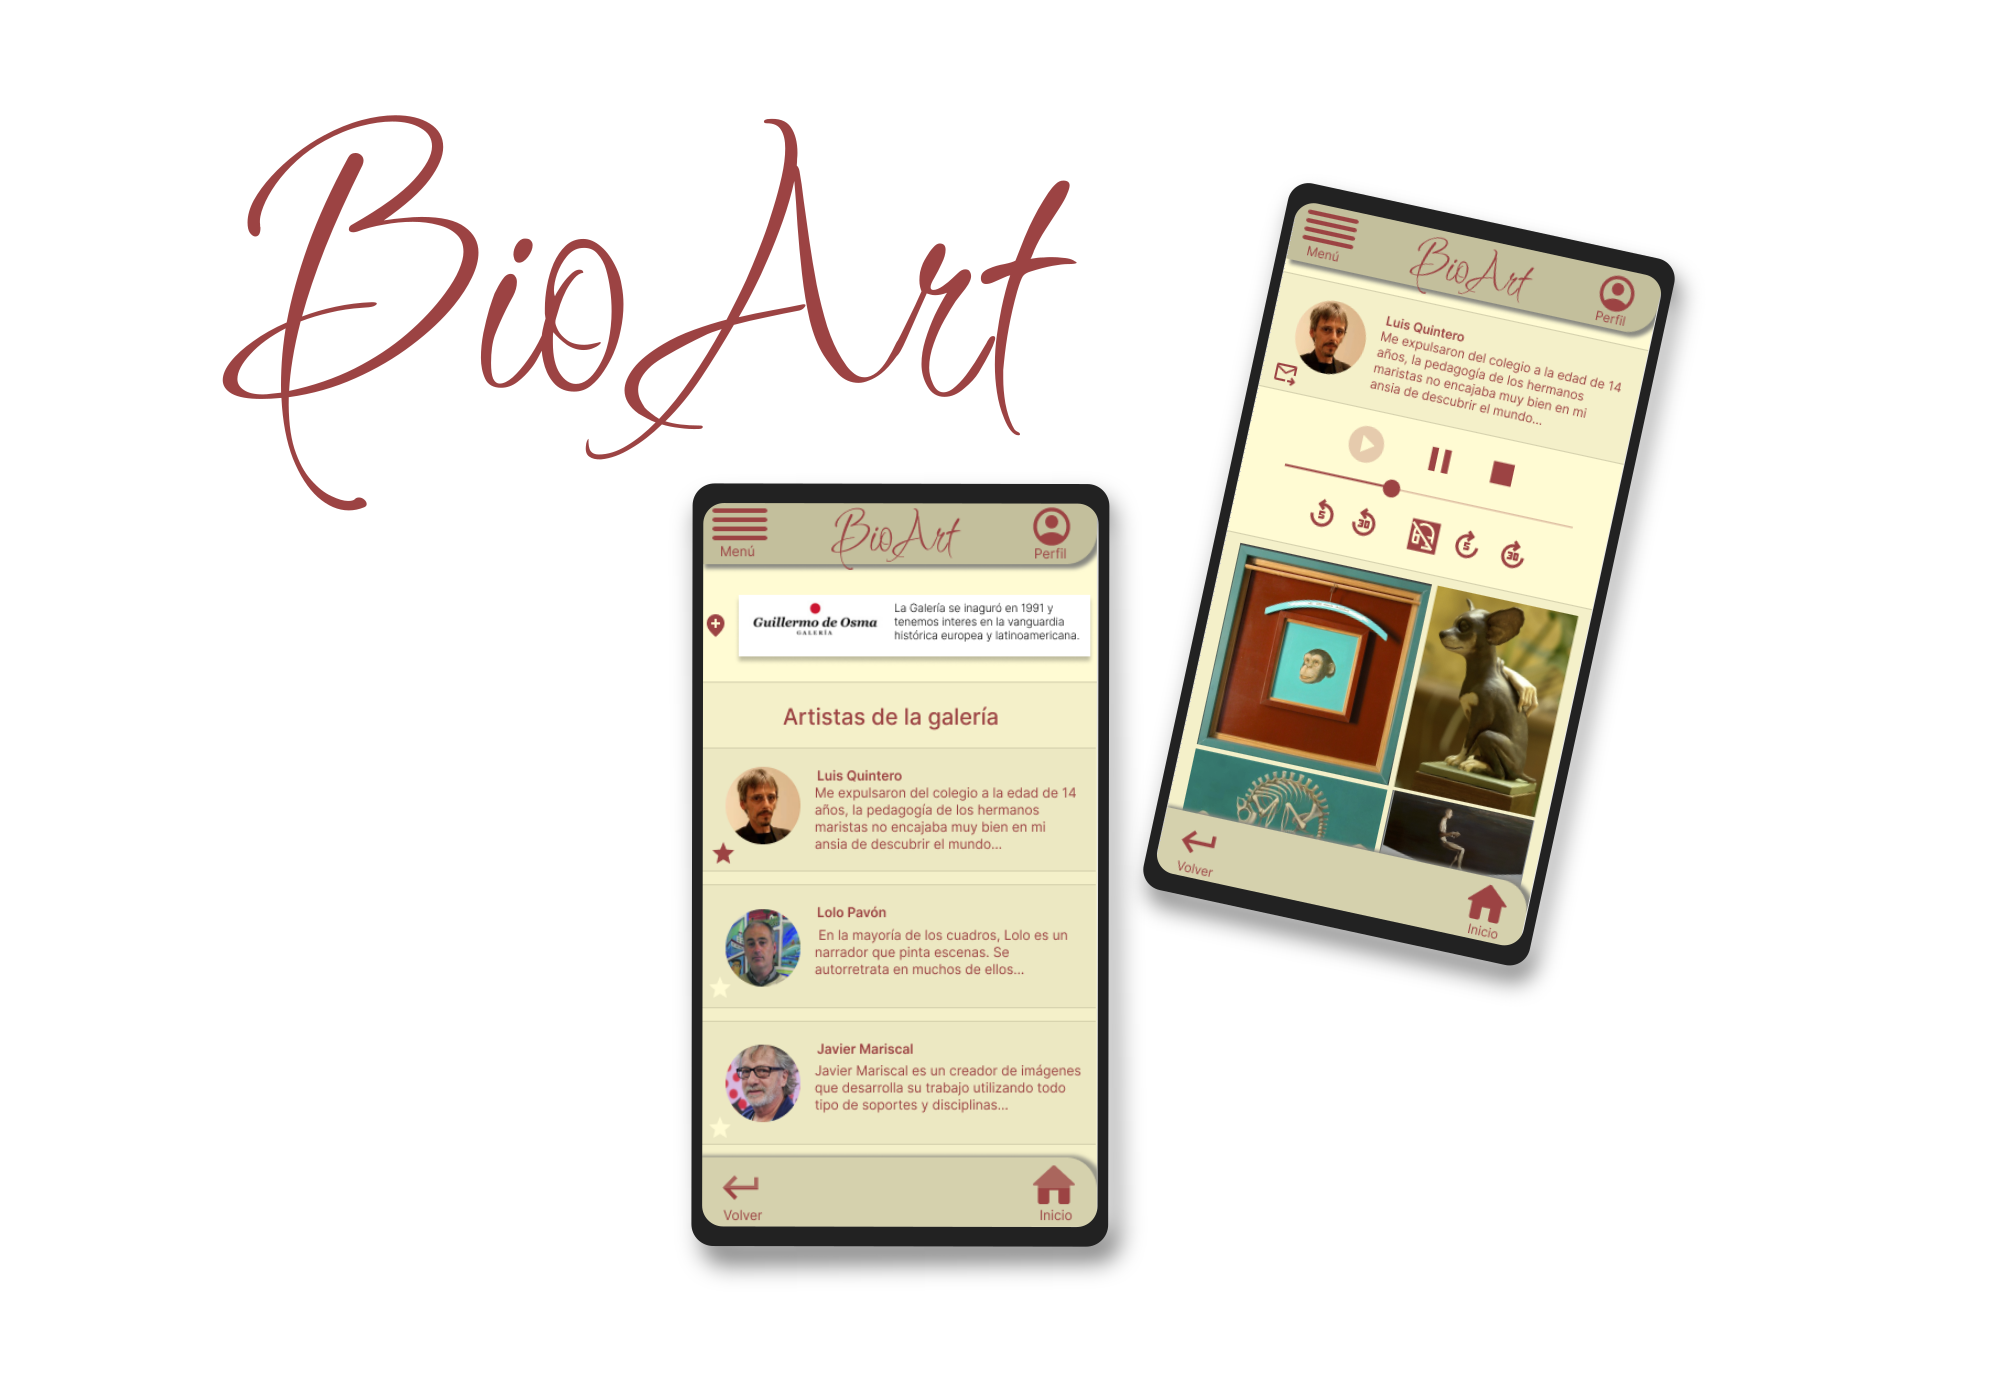 Diseño UX para una app de biografías de artistas para galería de arte